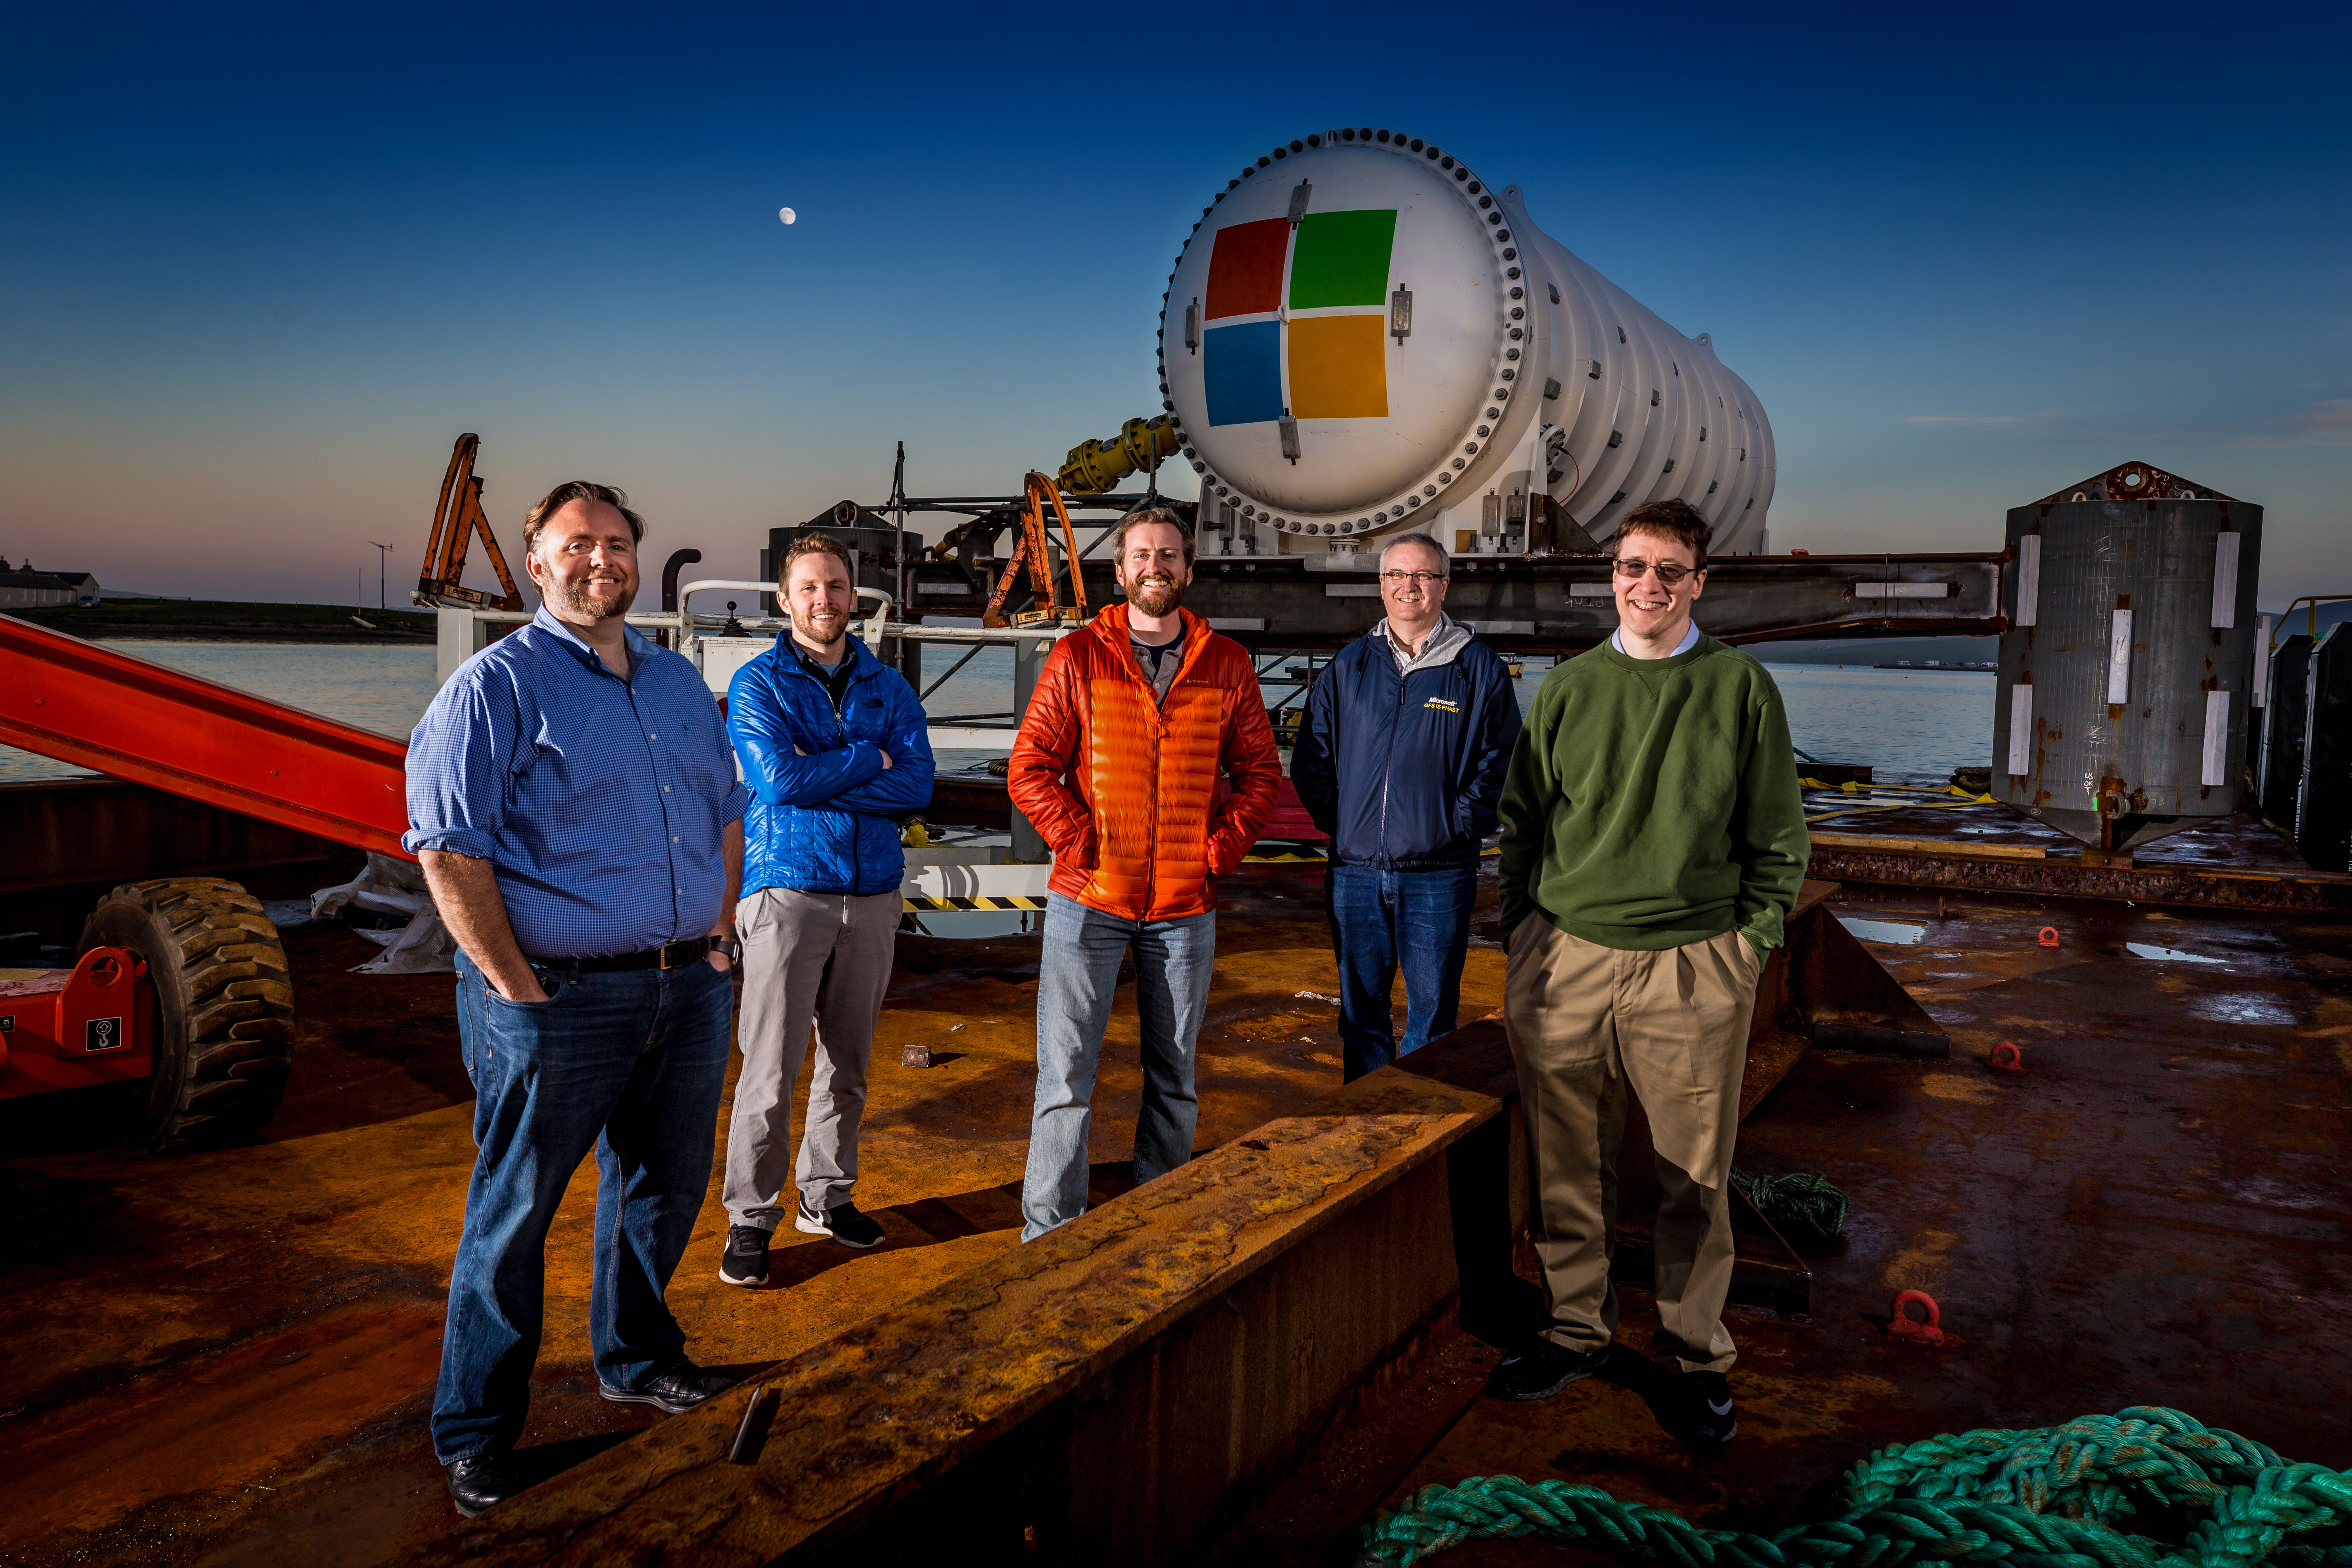 Fünf Mitarbeiter mit dem Microsoft Unterwasser-Rechenzentrum welches gerade ins Wasser gelassen wird